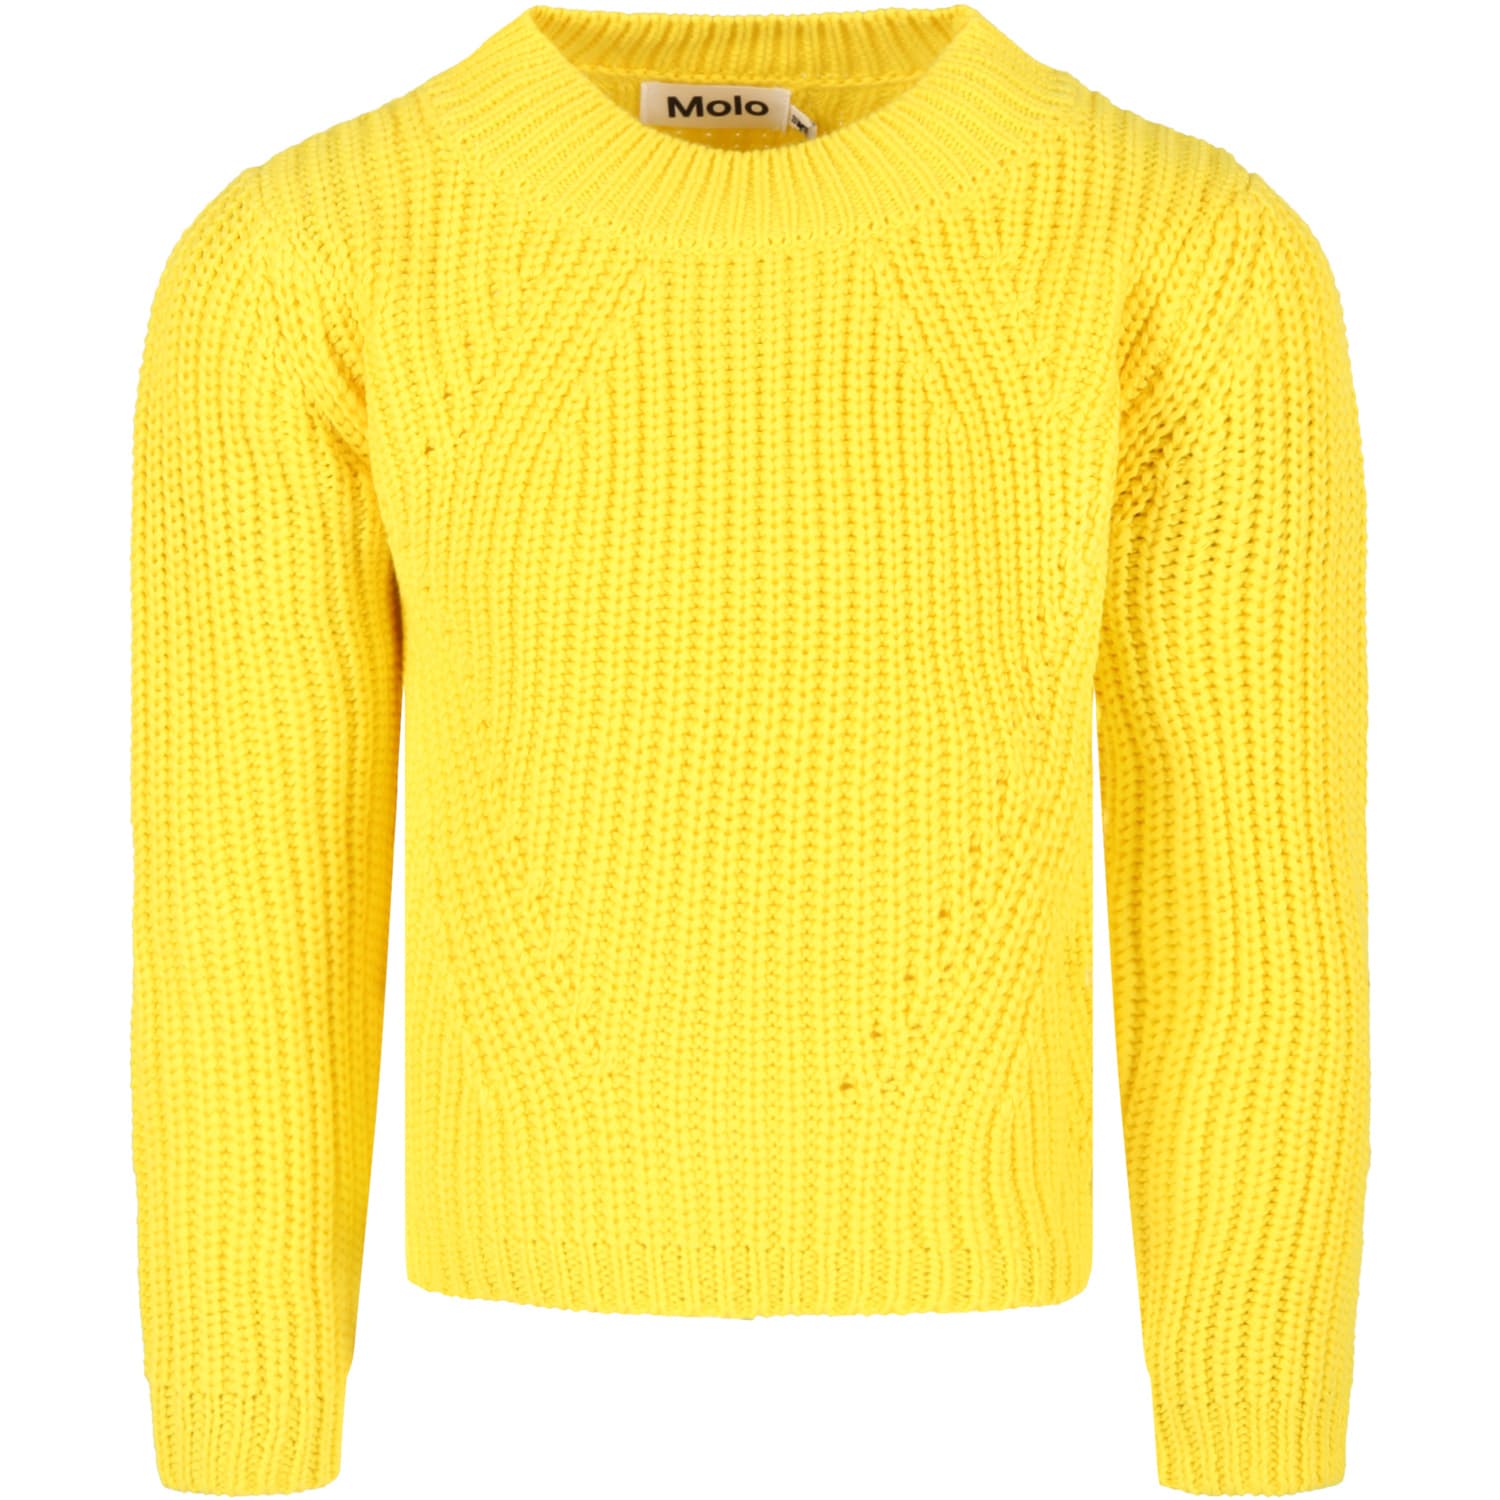 Molo Yellow Sweatshirt For Girl